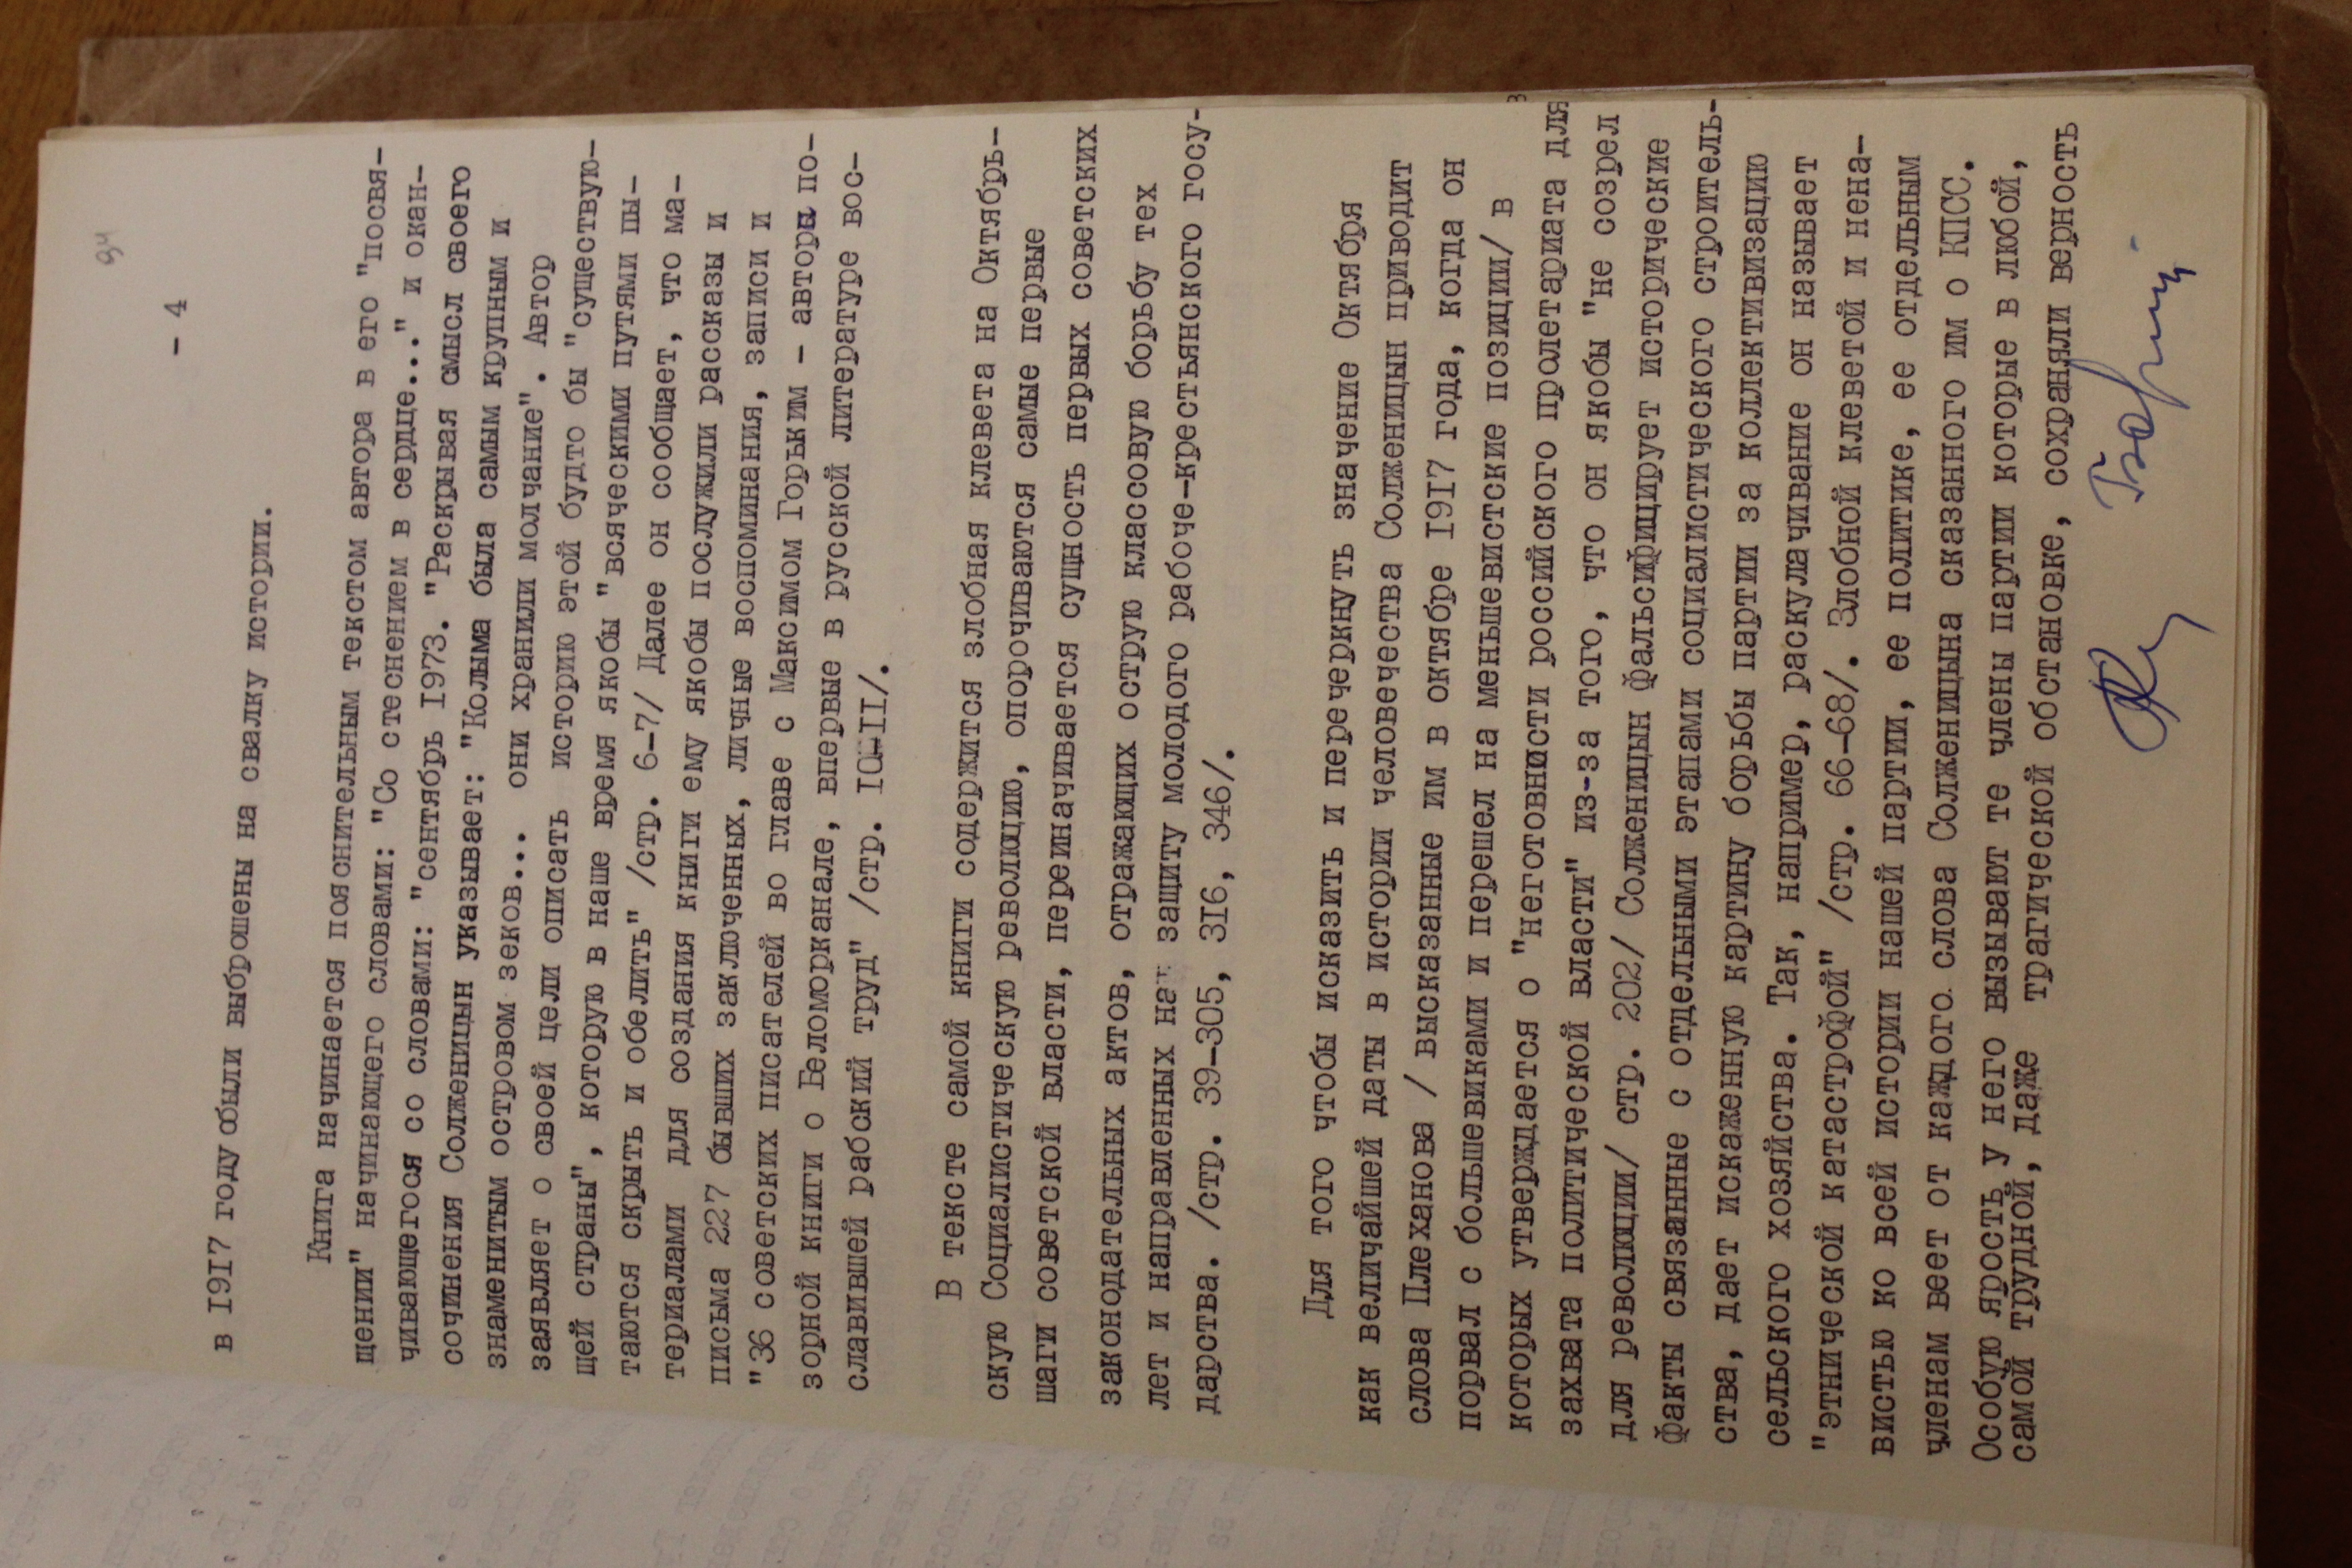  Рецензии на “Архипелаг ГУЛАГ” и “Письмо вождям Советского Союза” из уголовного дела Игрунова